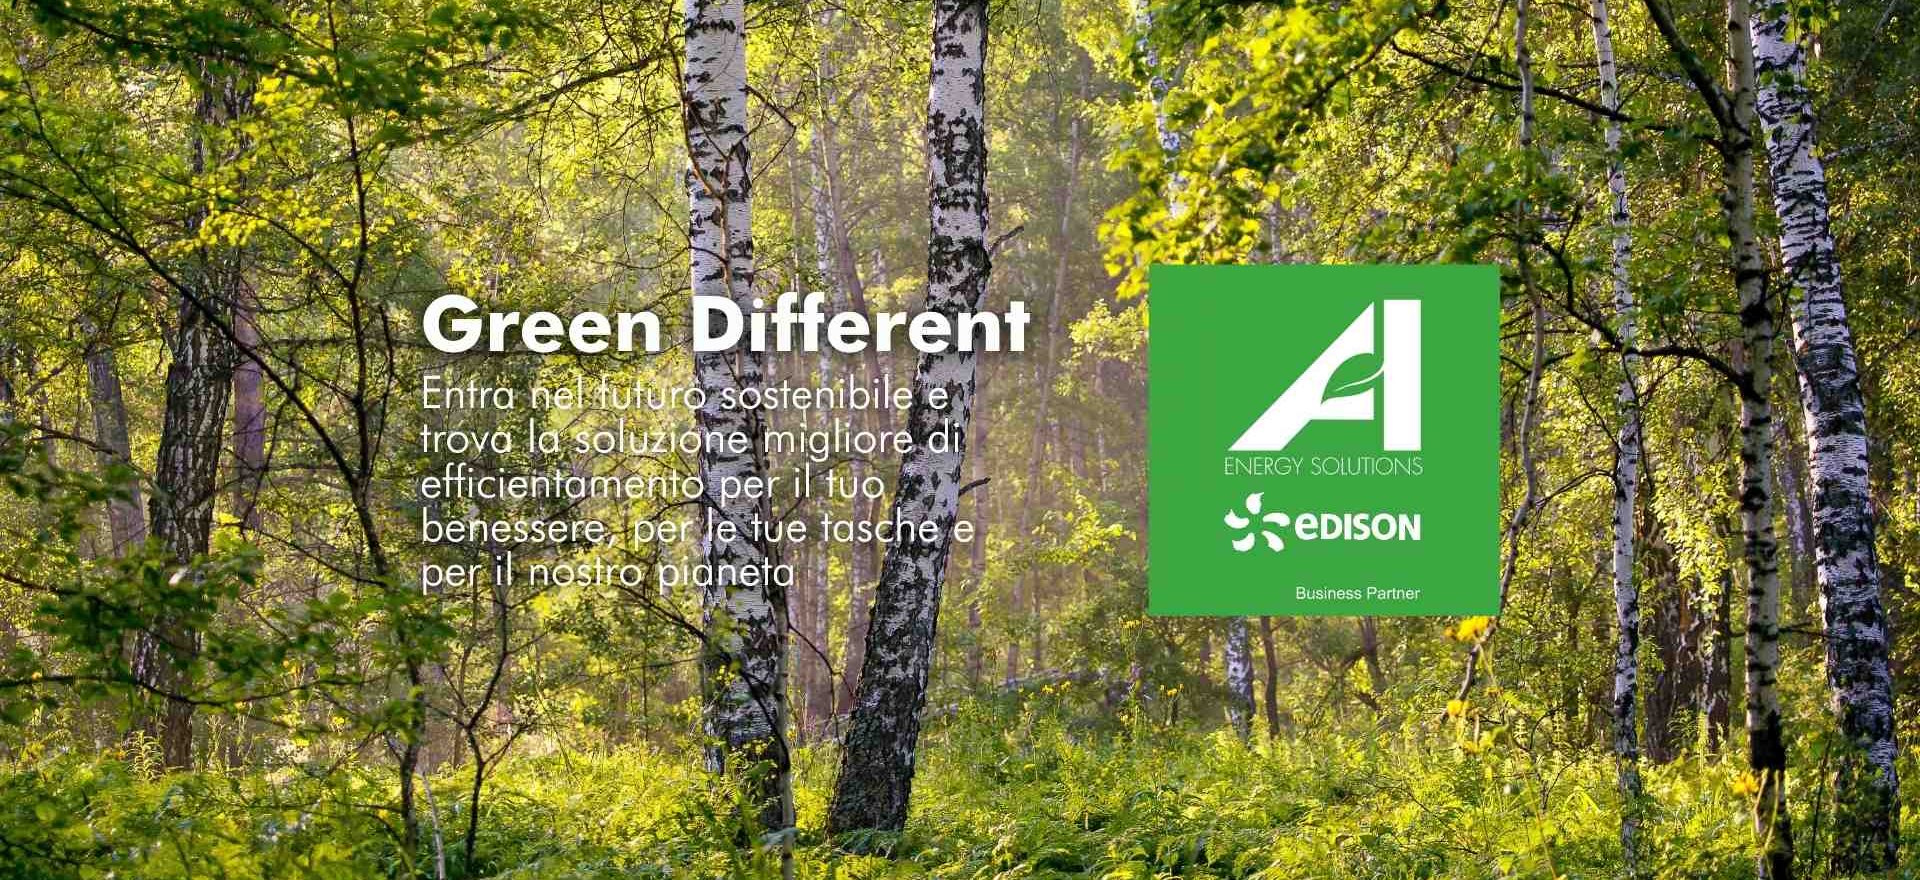 Bosco di betulle verde, come il logo di Energy Solutions